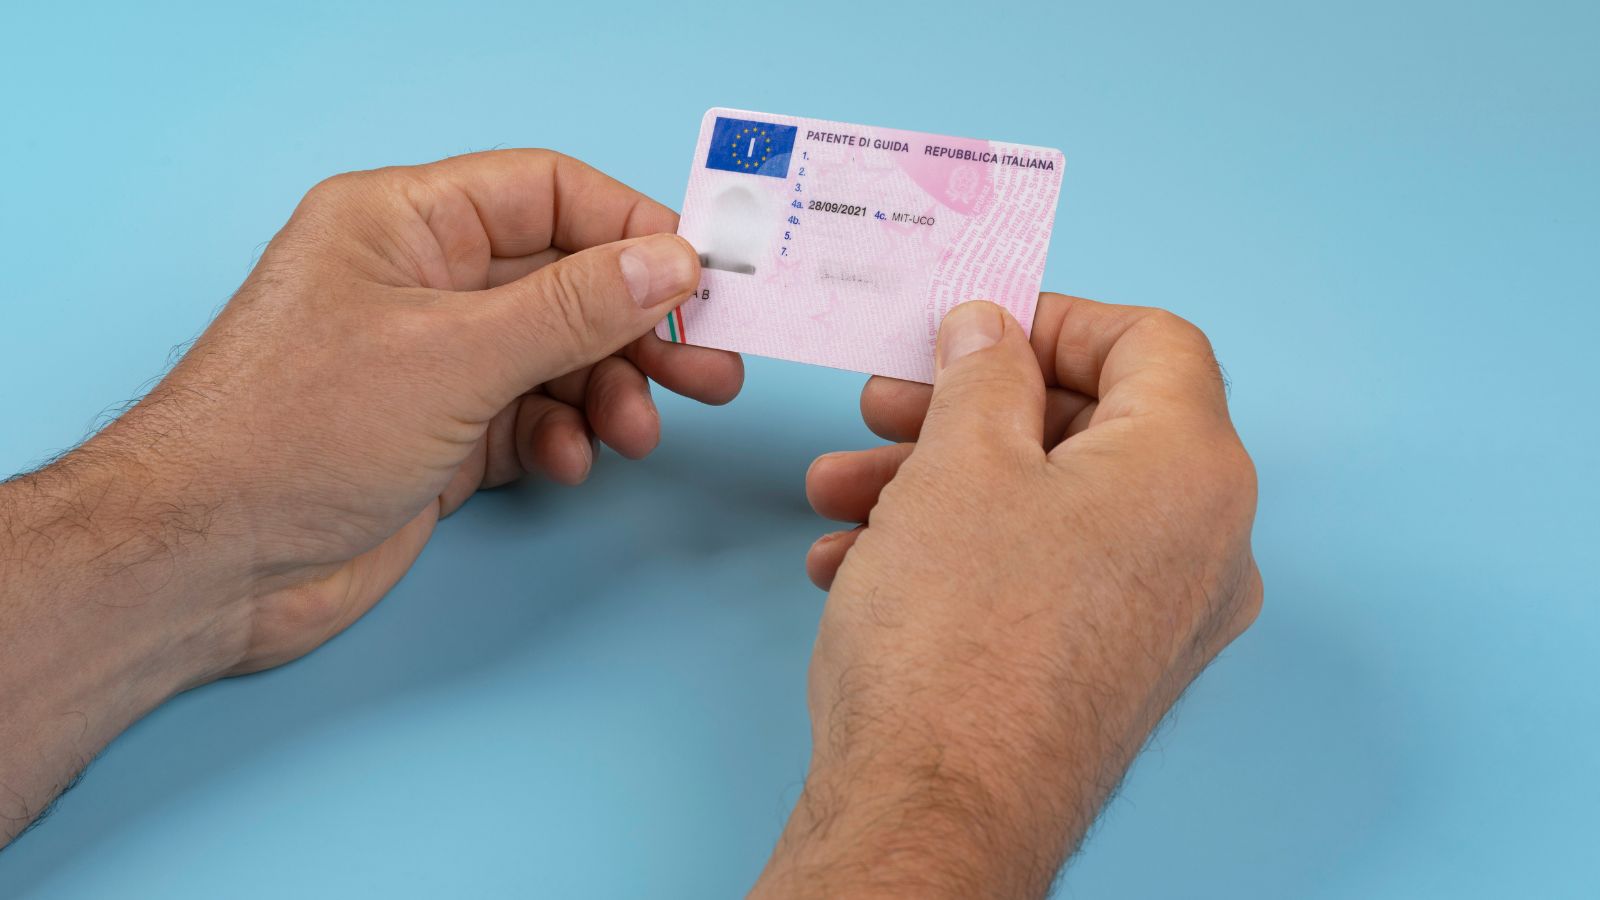 È ufficiale: ora anche in Italia arriva la nuova patente digitale